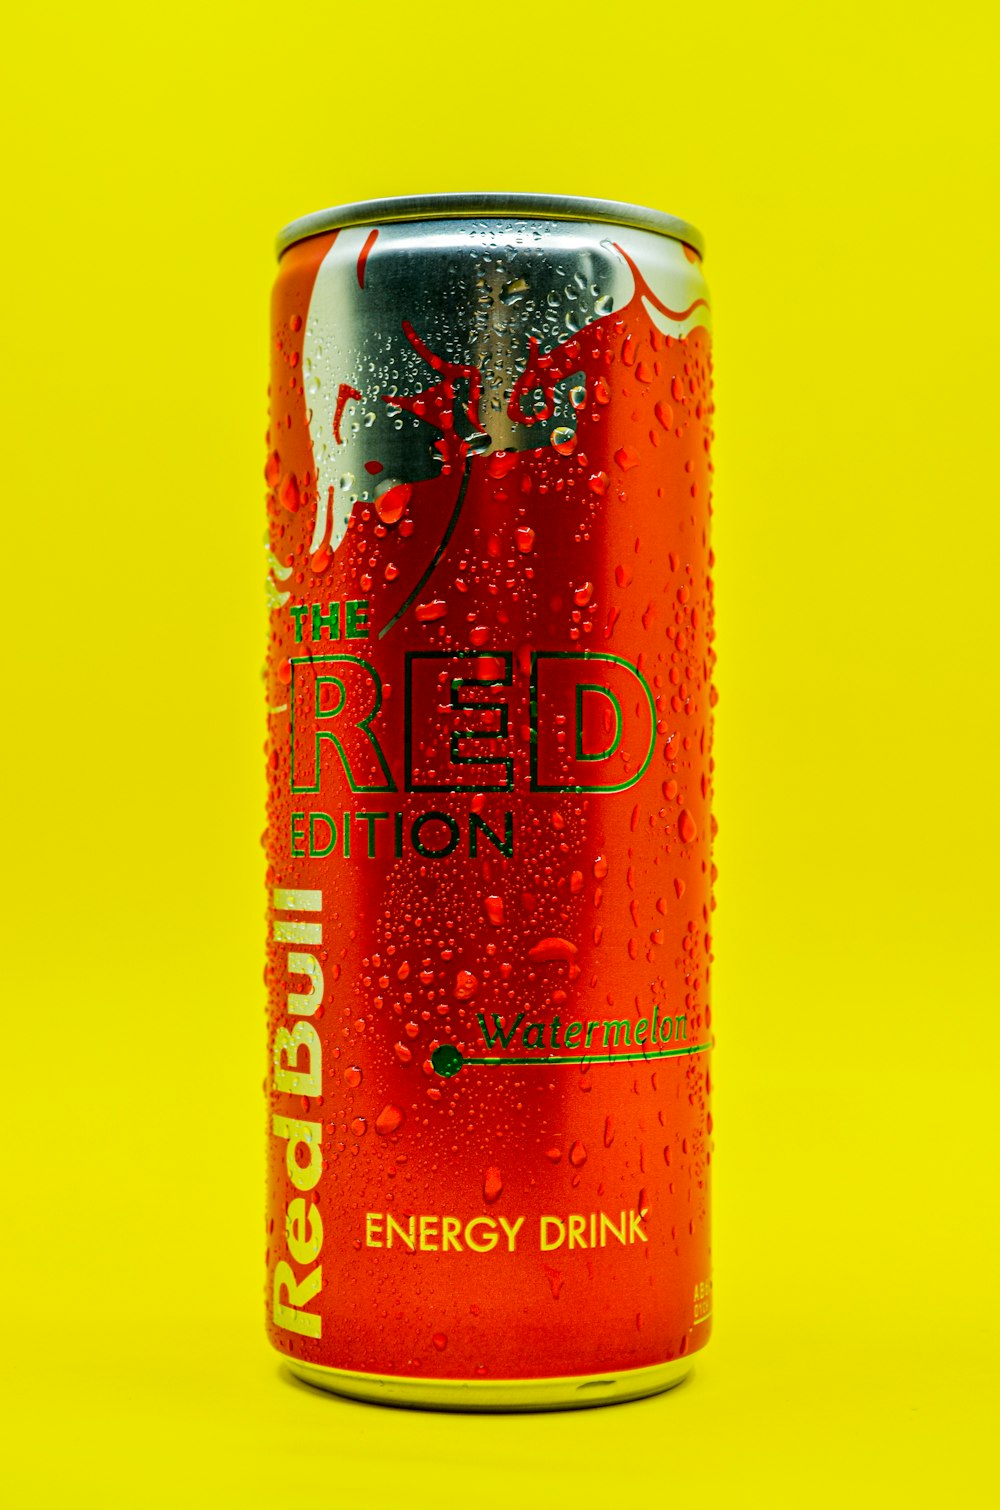 Una lata de bebida energética Red Bull sobre fondo amarillo